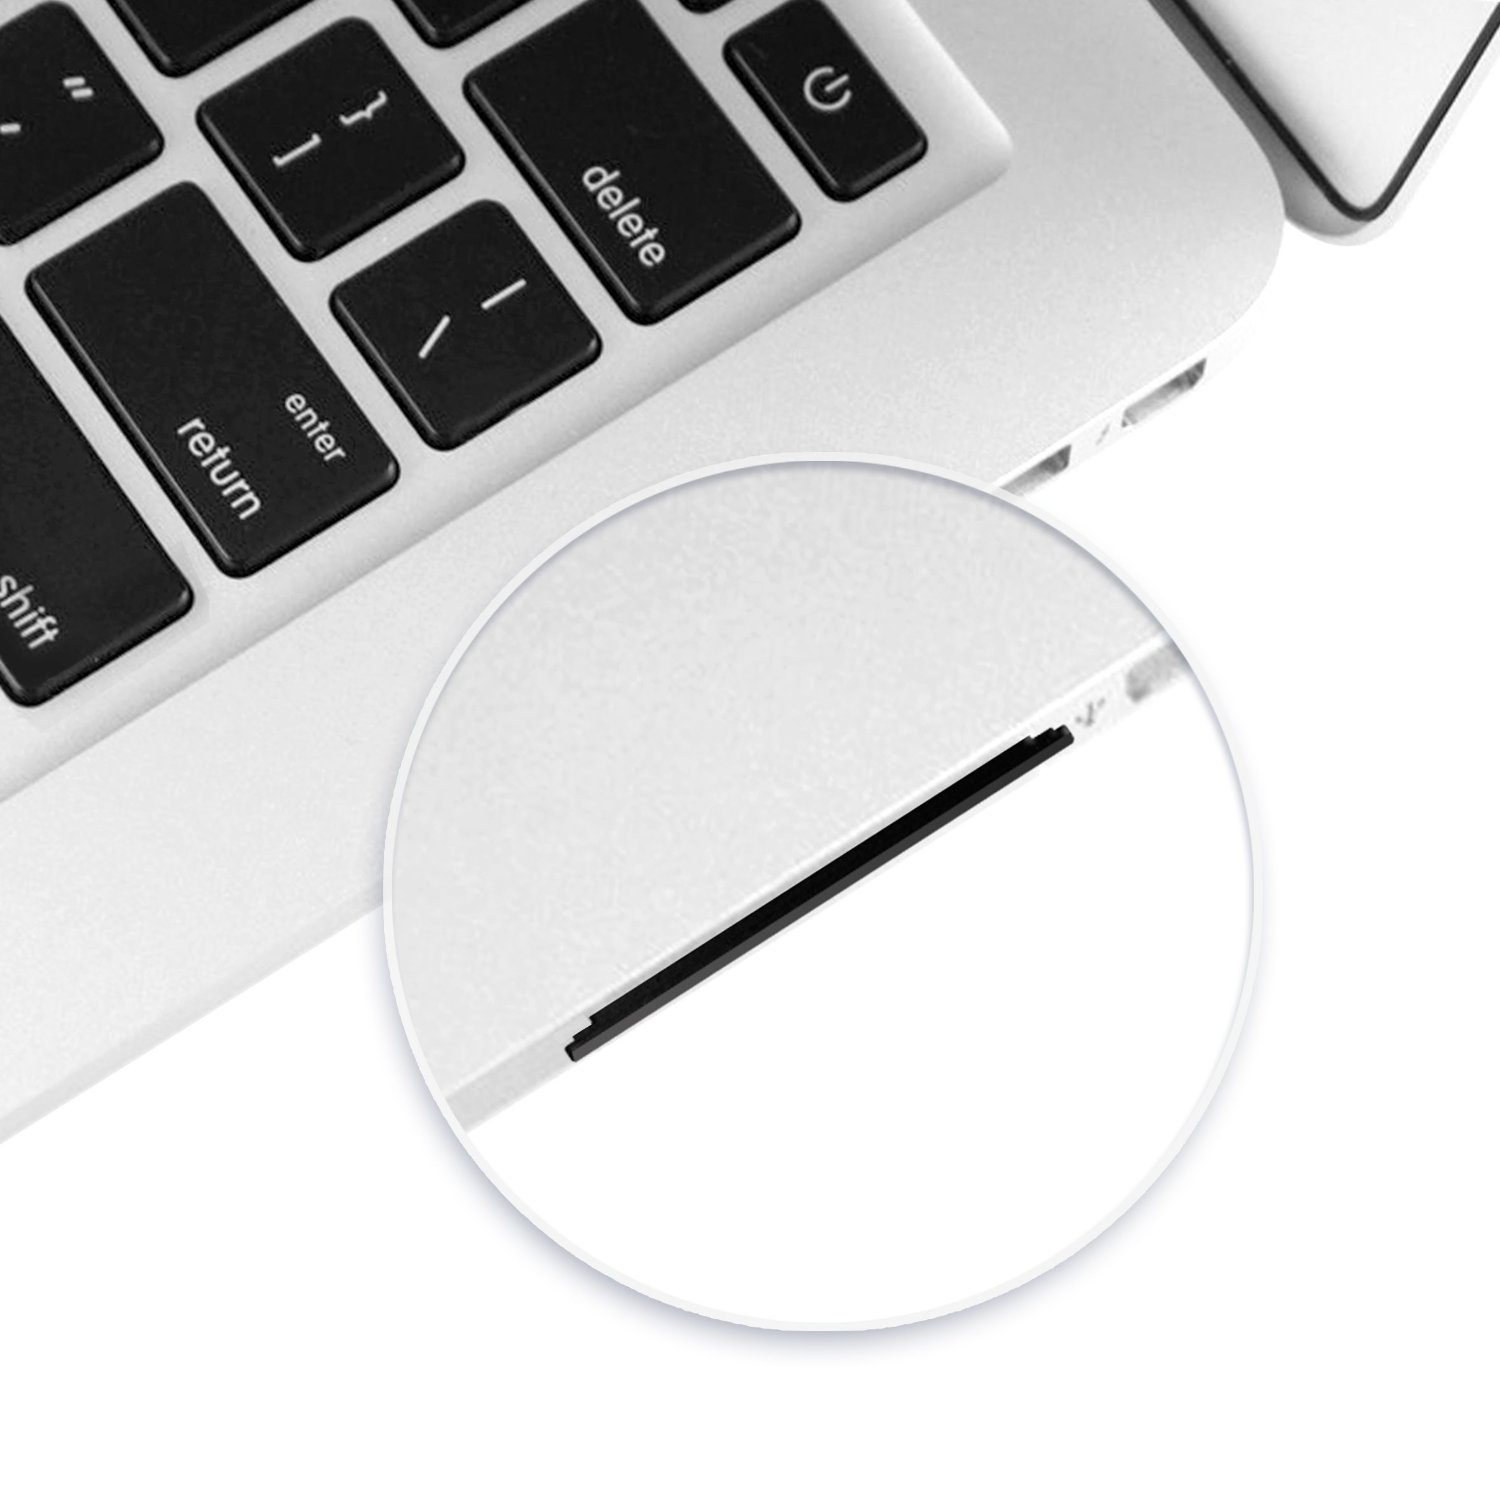 Thẻ nhớ Transcend JetDrive Lite 350 256GB cho MacBook Pro Retina 15 - Hàng chính Hãng 4